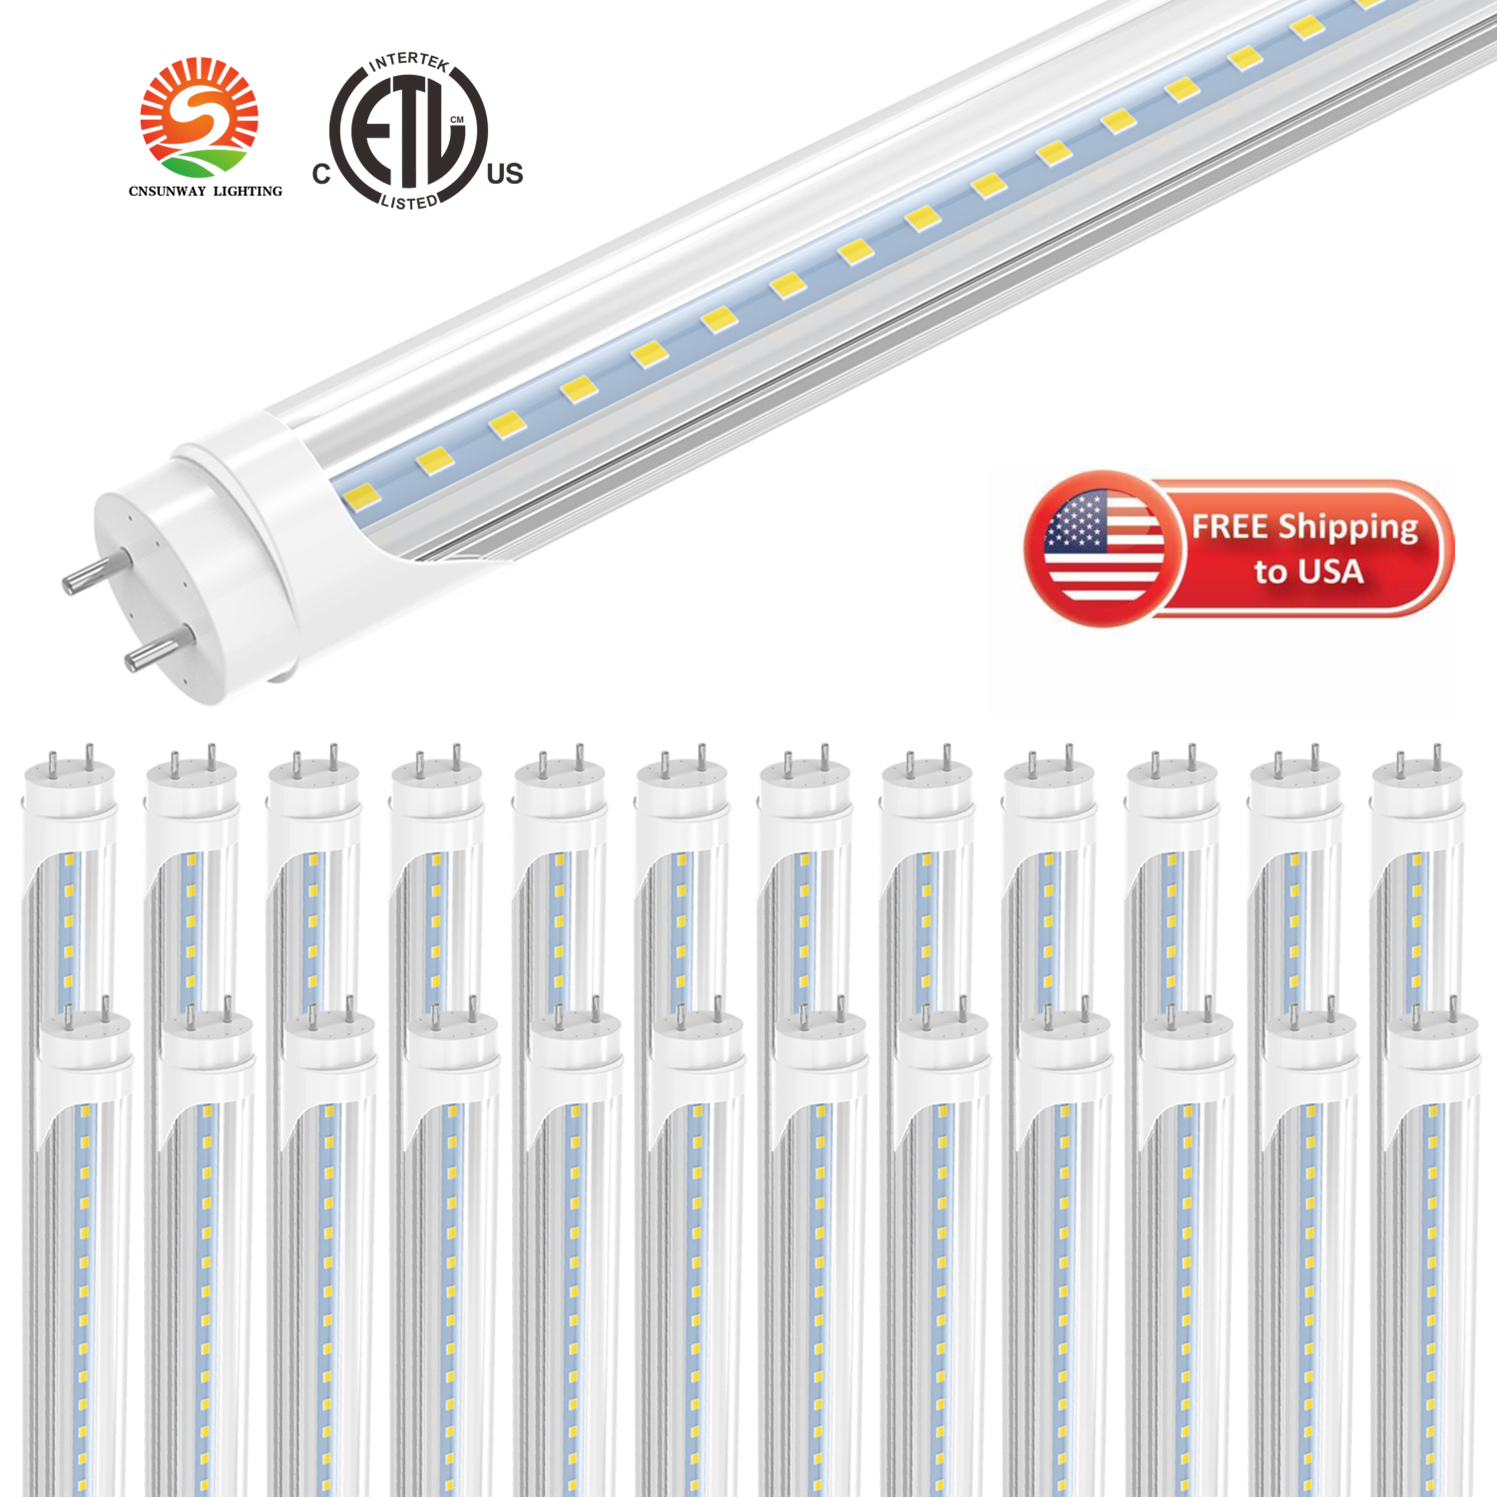 Lampadine LED T8 4 piedi, 22W 2400LM, bianco freddo 6000K, tubo luminoso di tipo B, doppia alimentazione, bypass zavorra, copertura trasparente, sostituzione lampadine fluorescenti T8 T10 T12 ETL